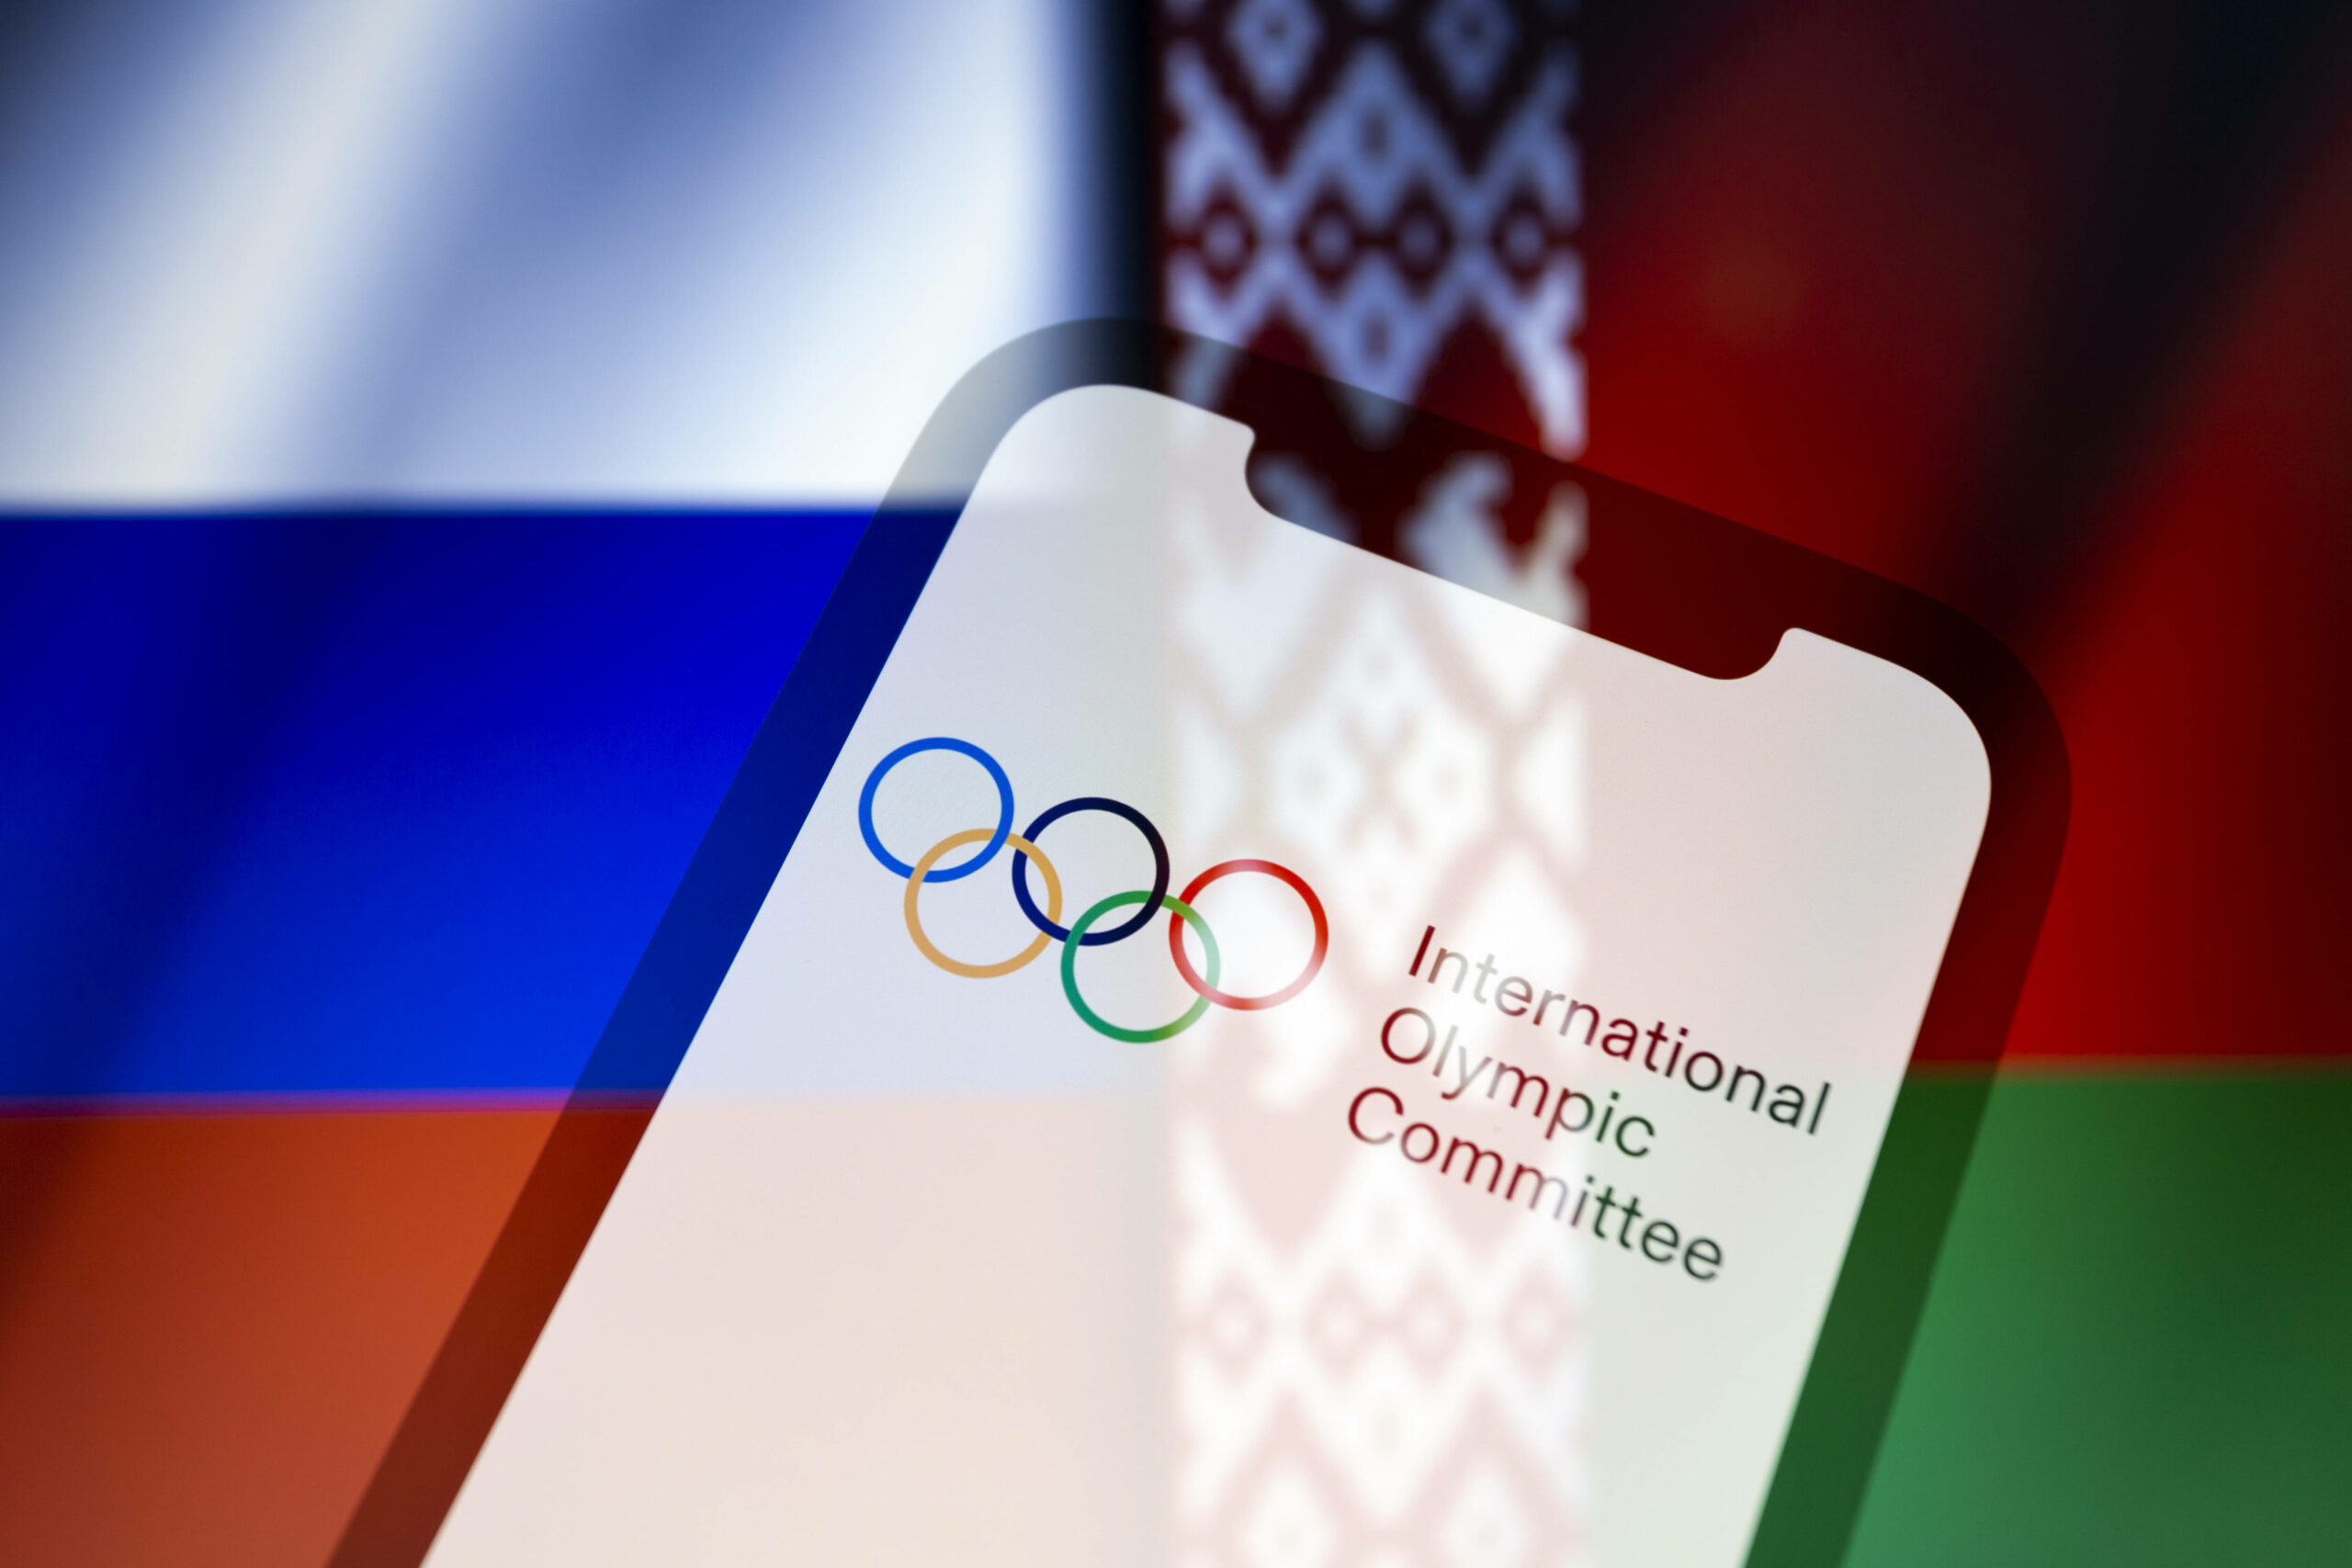 Olympia-Logo vor den Flaggen von Russland und Belarus